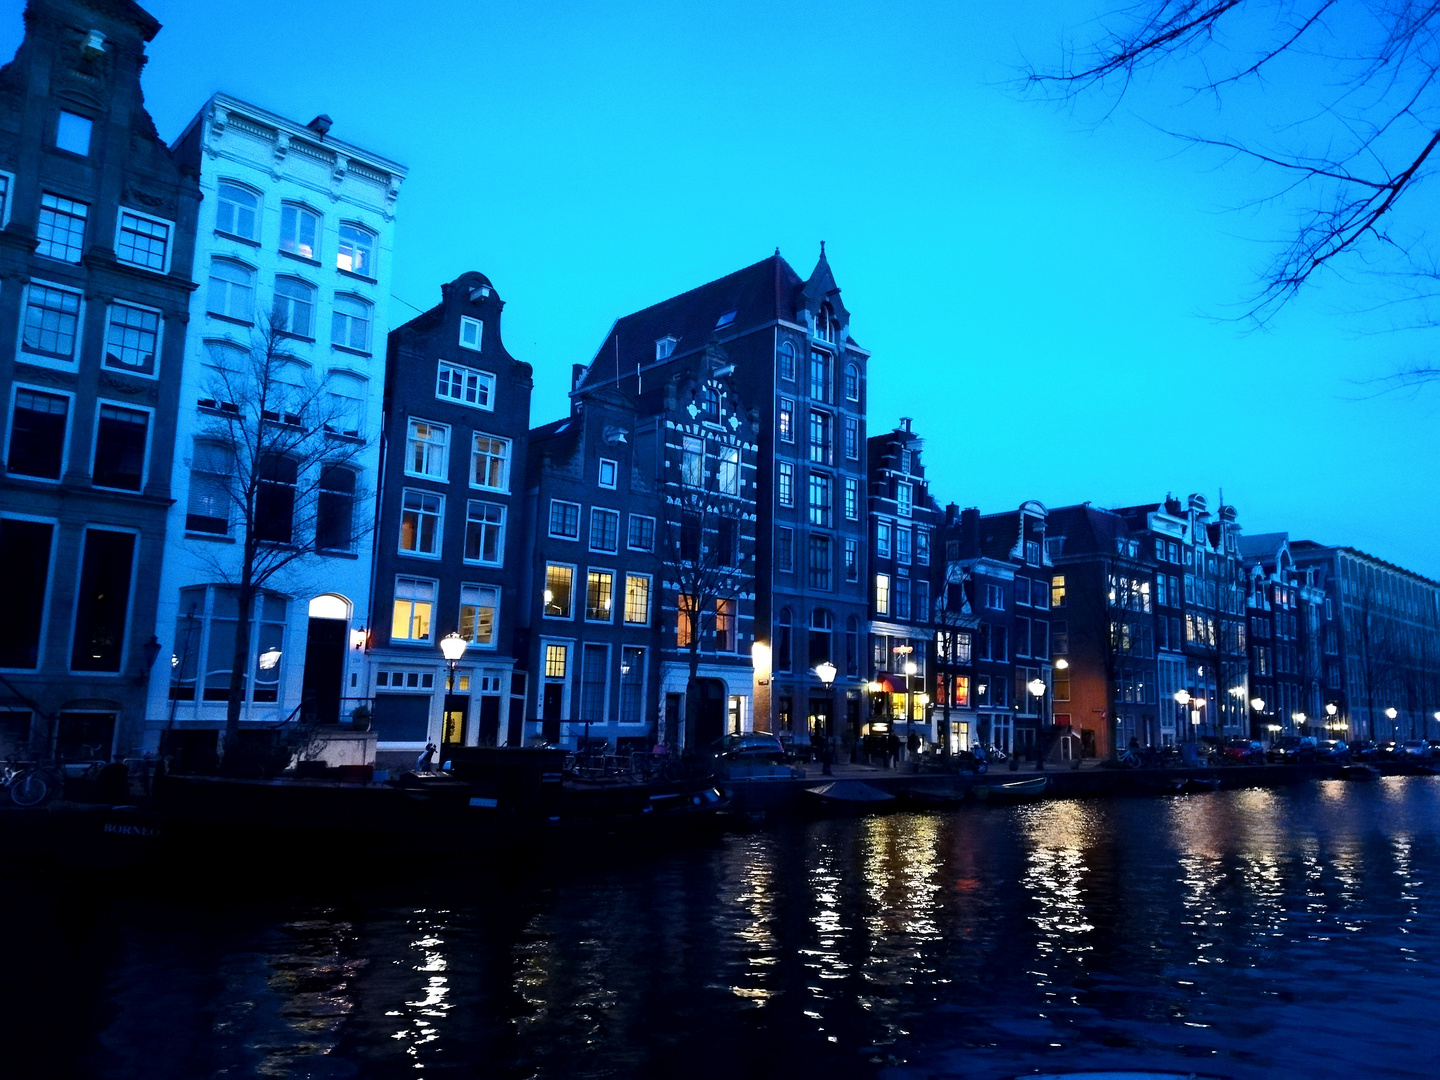 Lovely Amsterdam